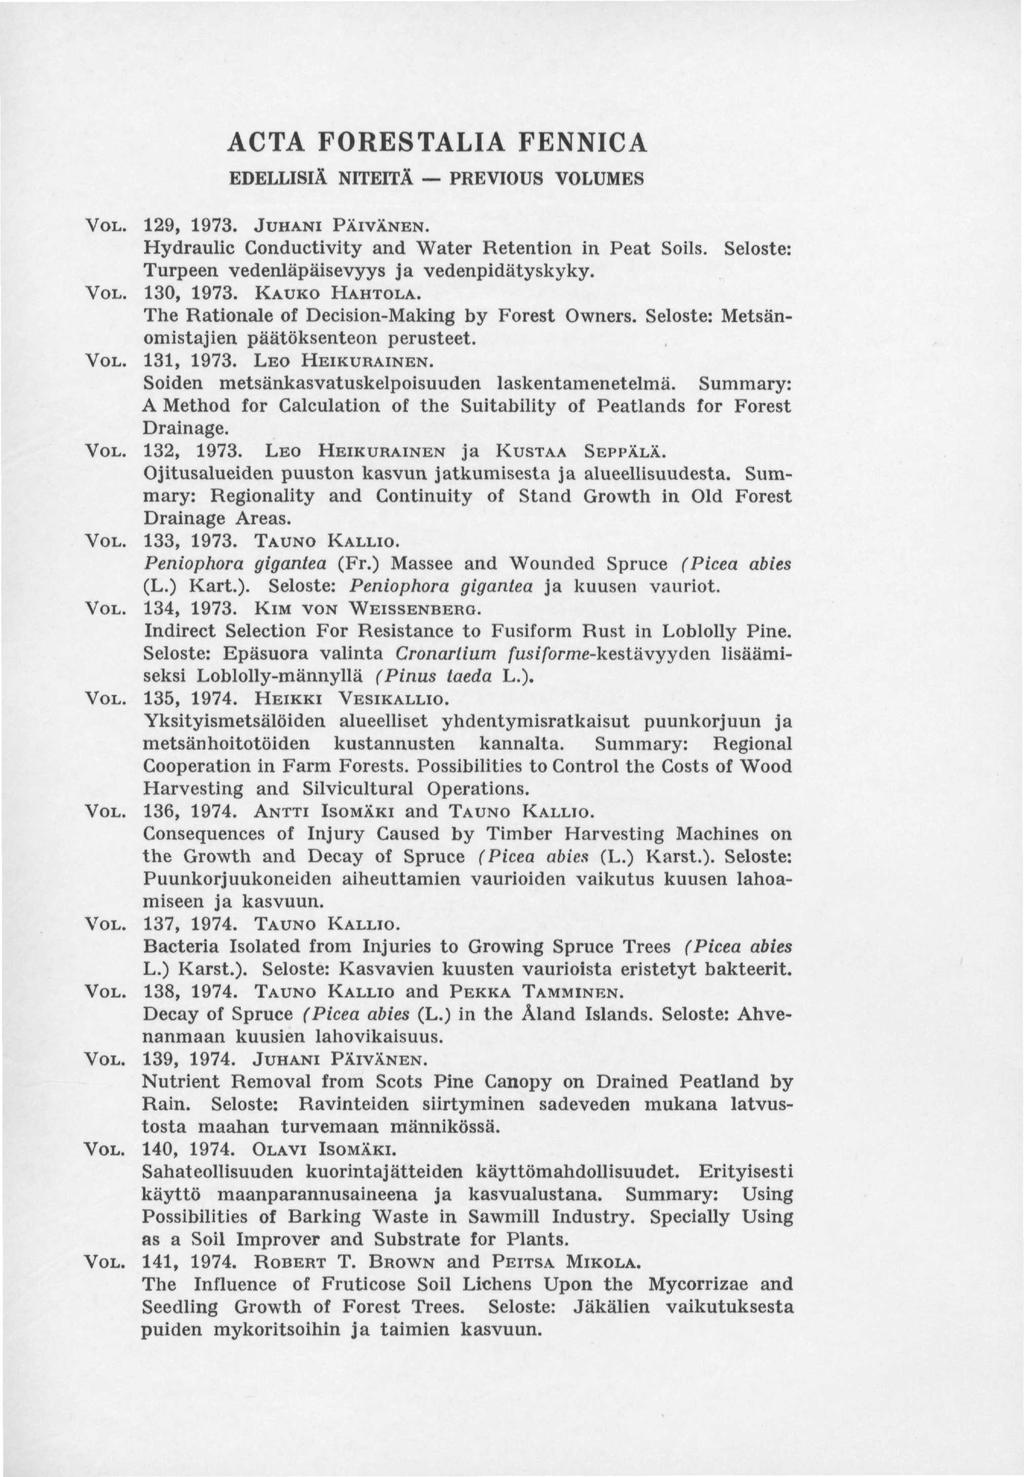 ACTA FORESTALIA FENNICA EDELLISIÄ NITEITÄ PREVIOUS VOLUMES VOL. 129, 1973. JUHANI PÄIVÄNEN. Hydraulic Conductivity and Water Retention in Peat Soils.